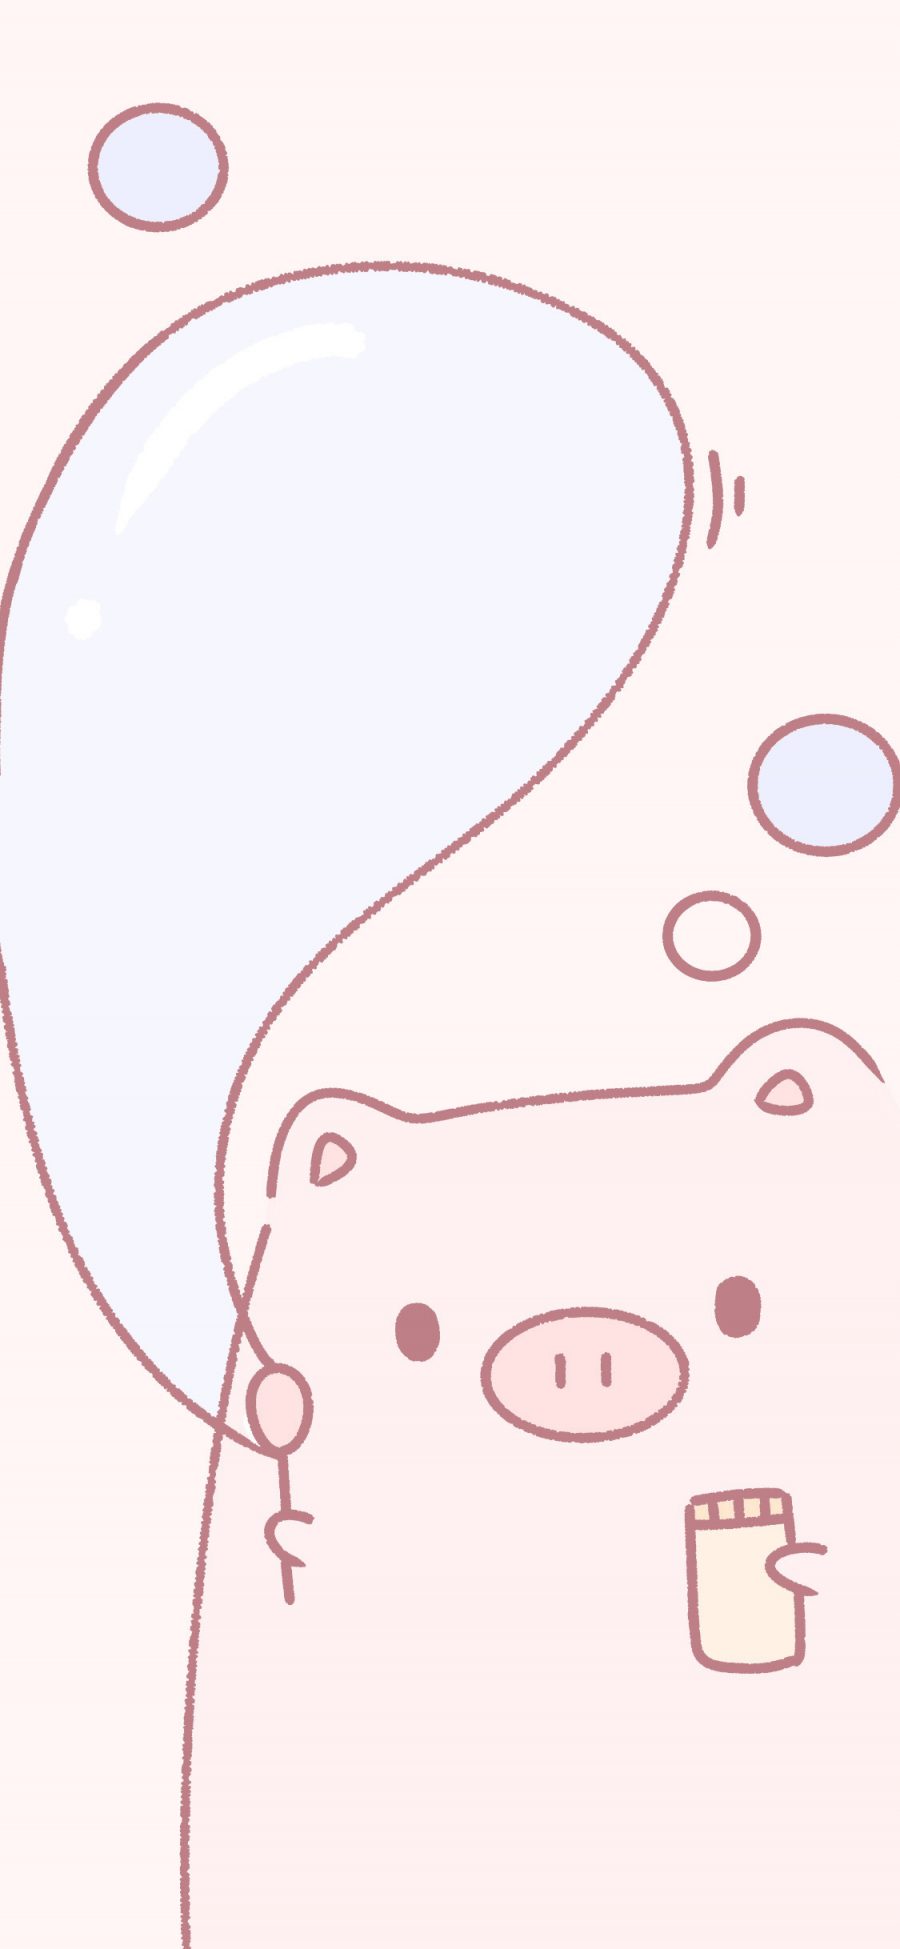 [2436×1125]猪猪 粉色 吹泡泡 可爱 卡通 苹果手机动漫壁纸图片